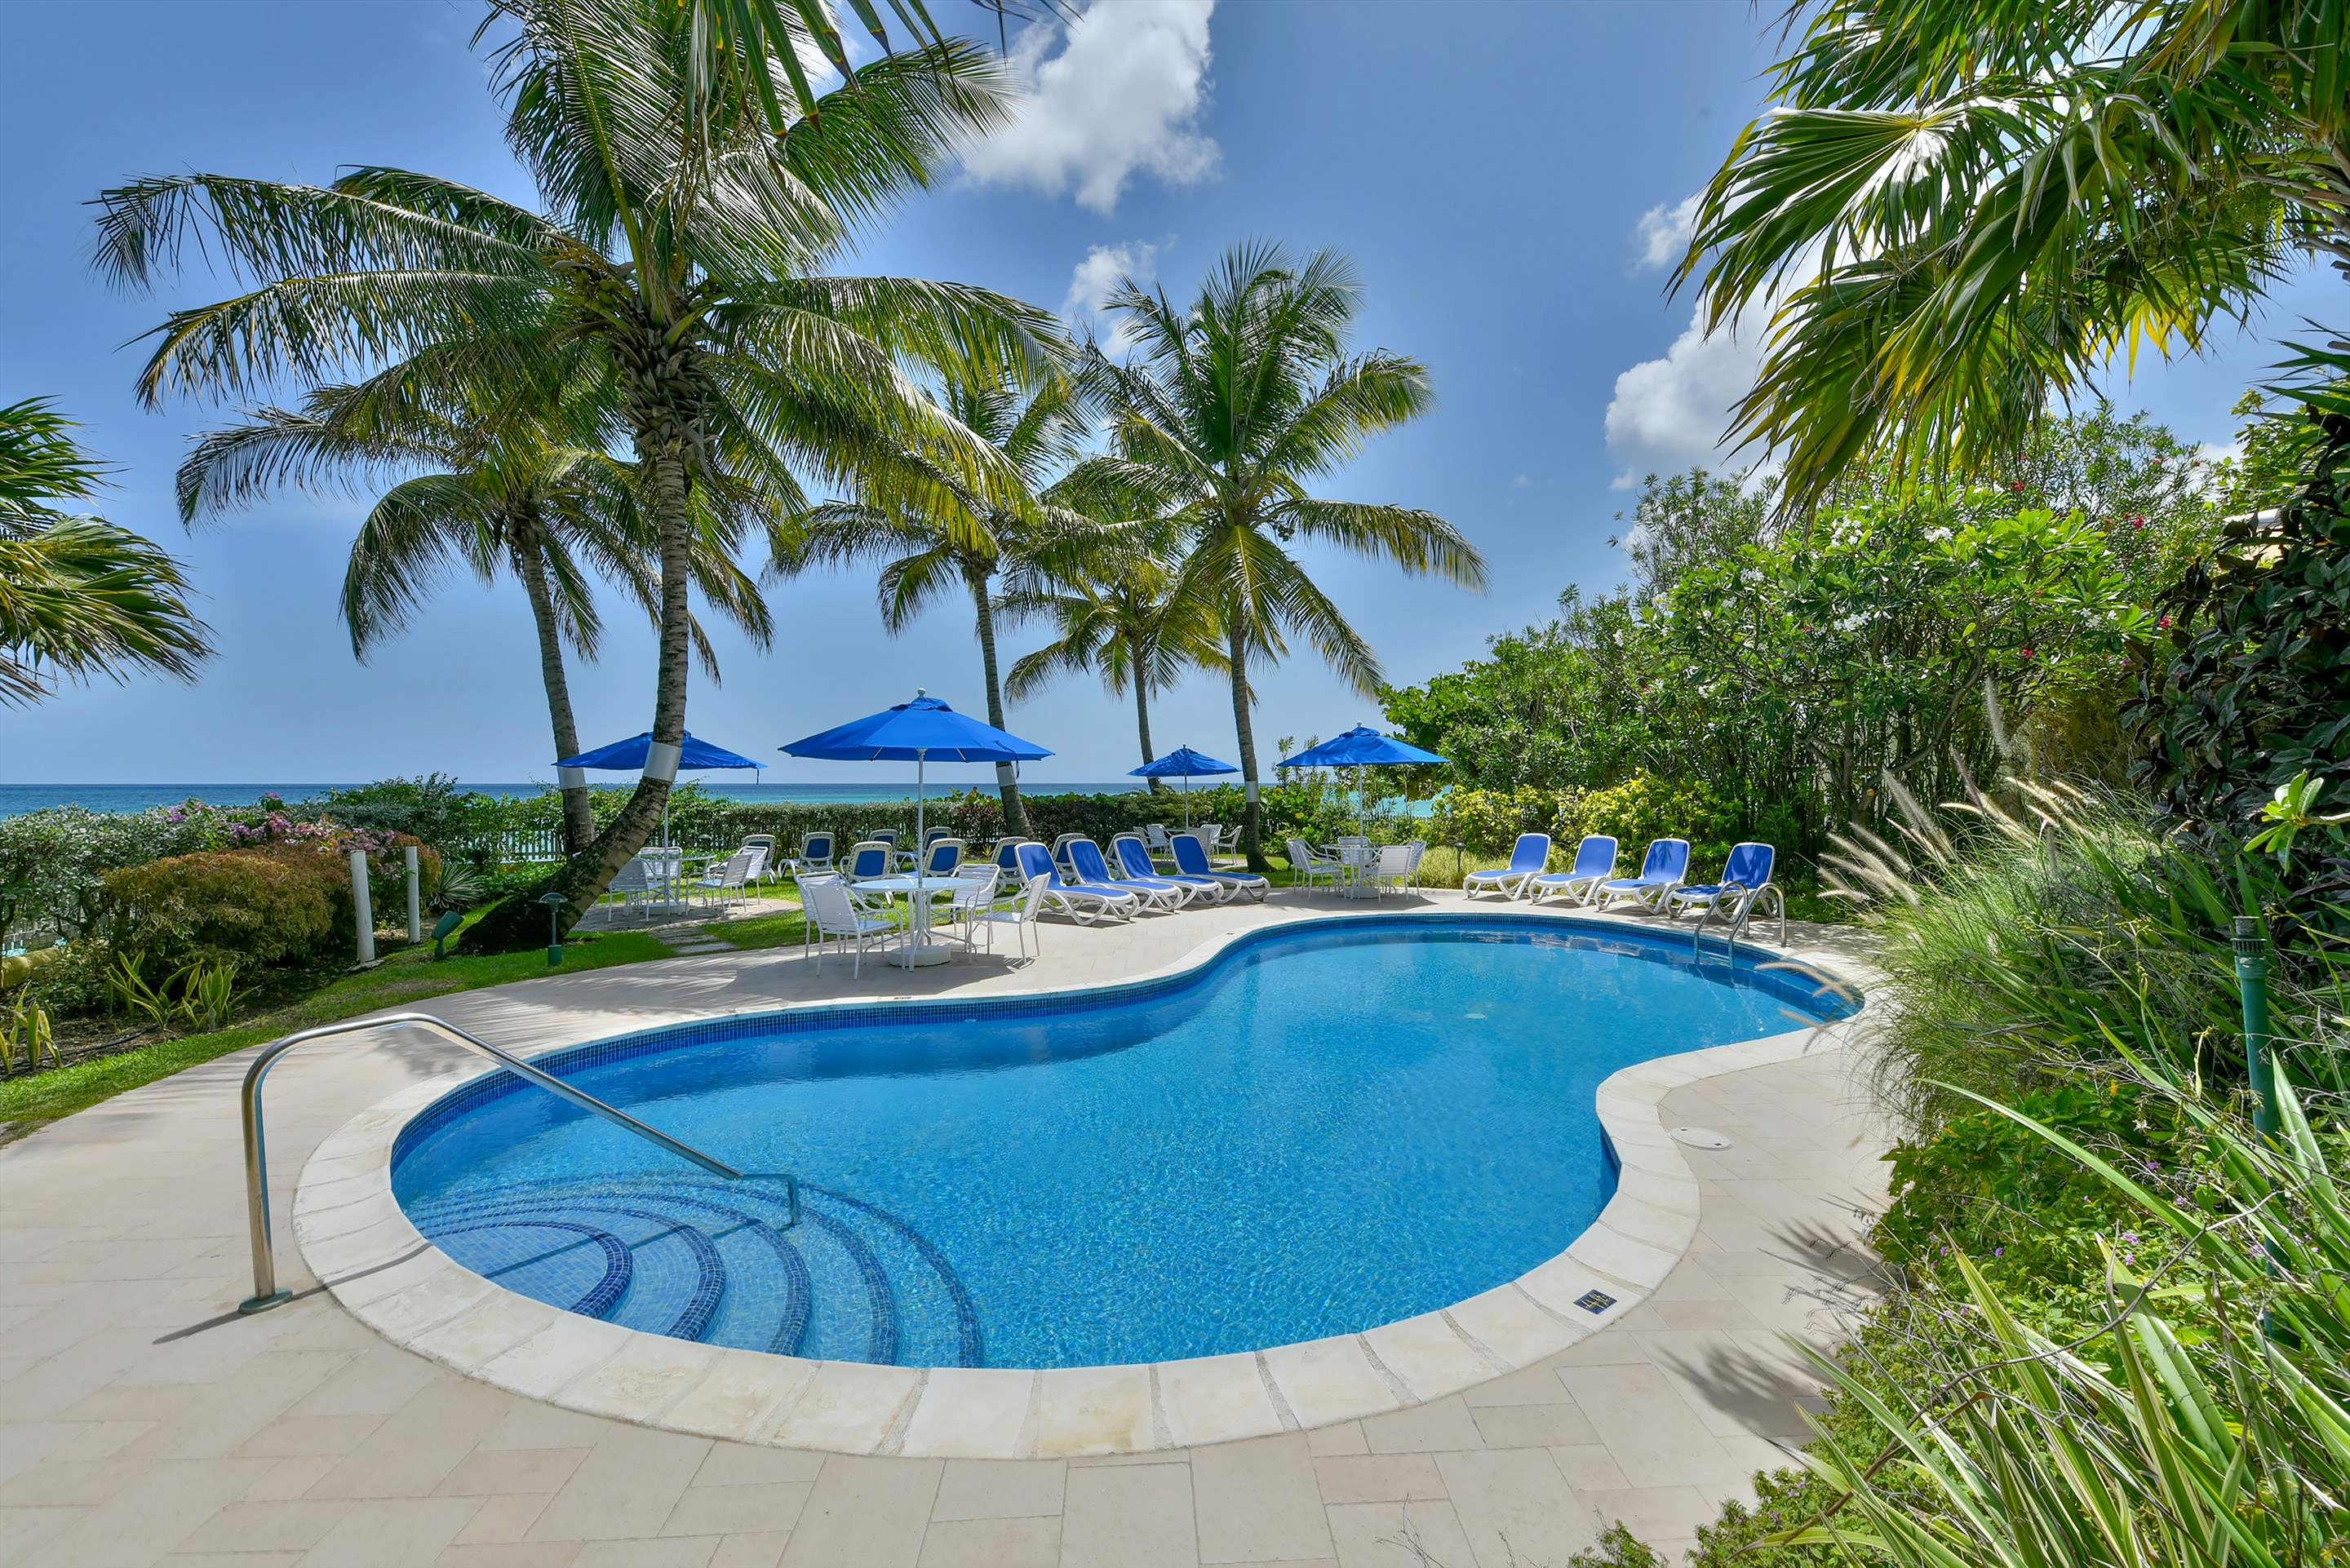 Maxwell Beach Villas 302, 2 bedroom, 2 bedroom apartment in St. Lawrence Gap & South Coast, Barbados Photo #9